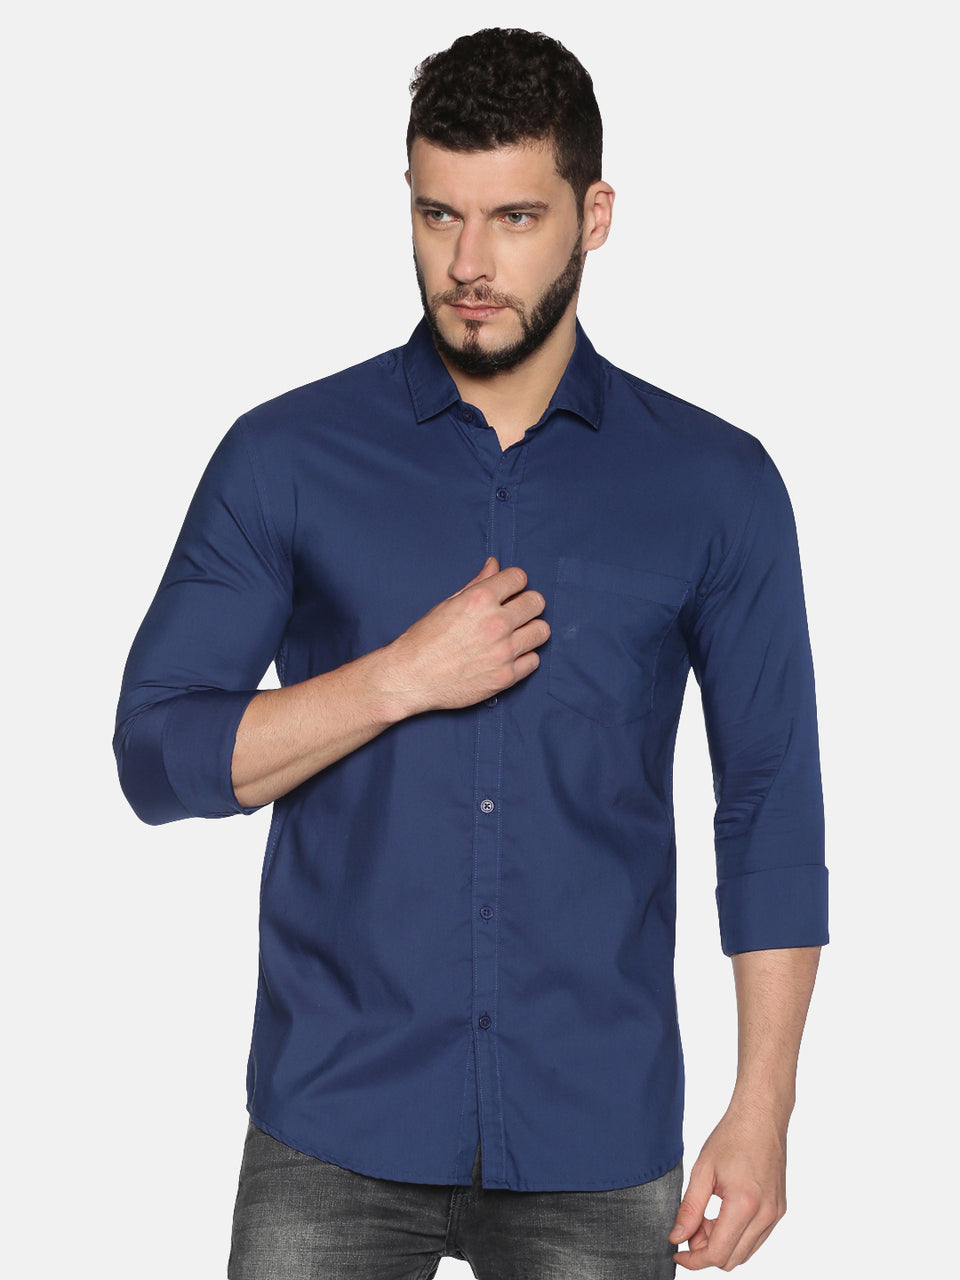 Men blue cotton slim fit plain formal shirt